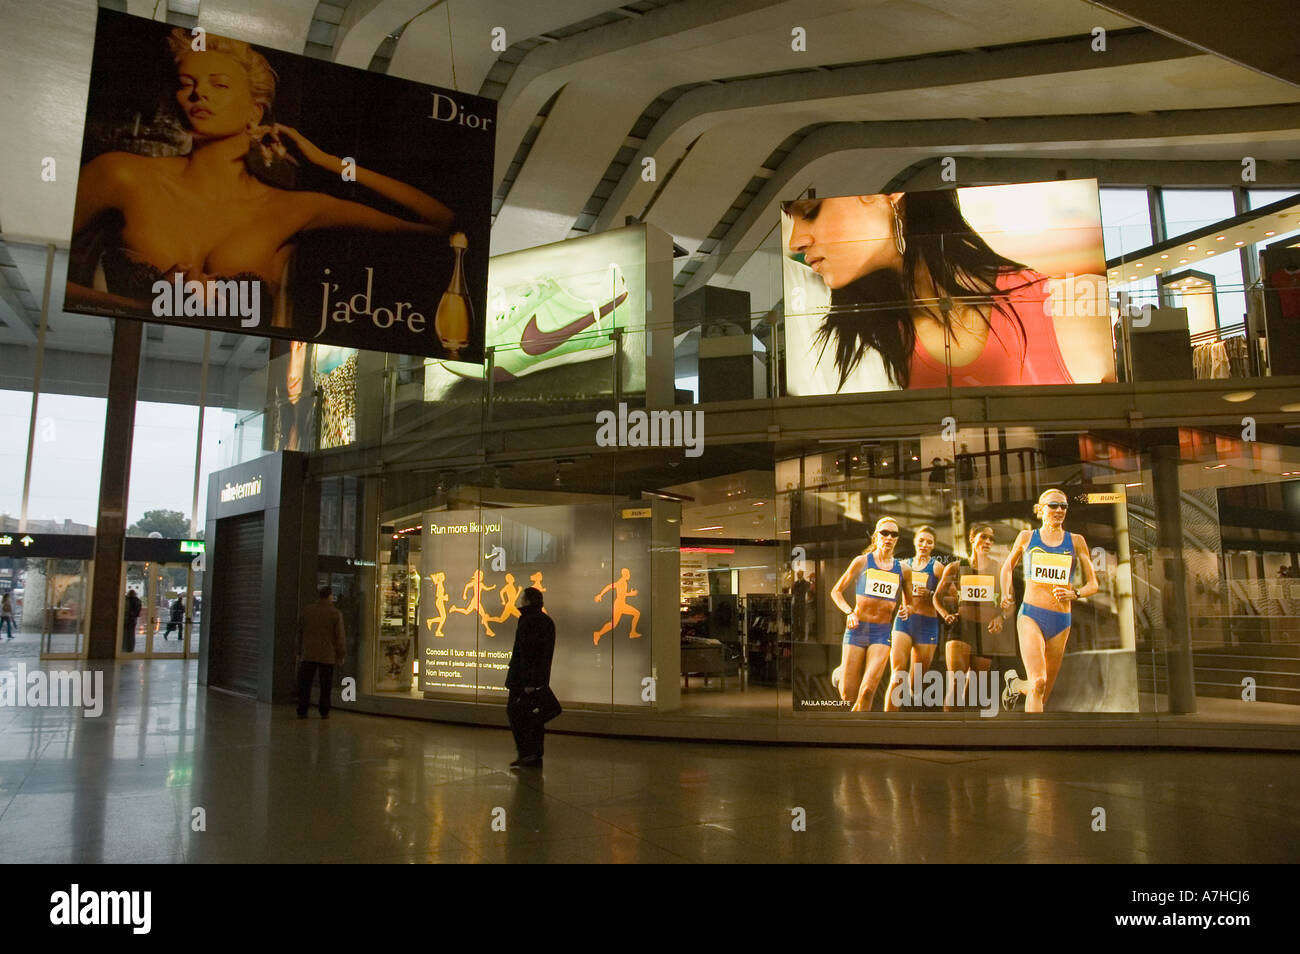 Grande pubblicità per Nike e Dior a Roma Stazione Termini Foto stock - Alamy